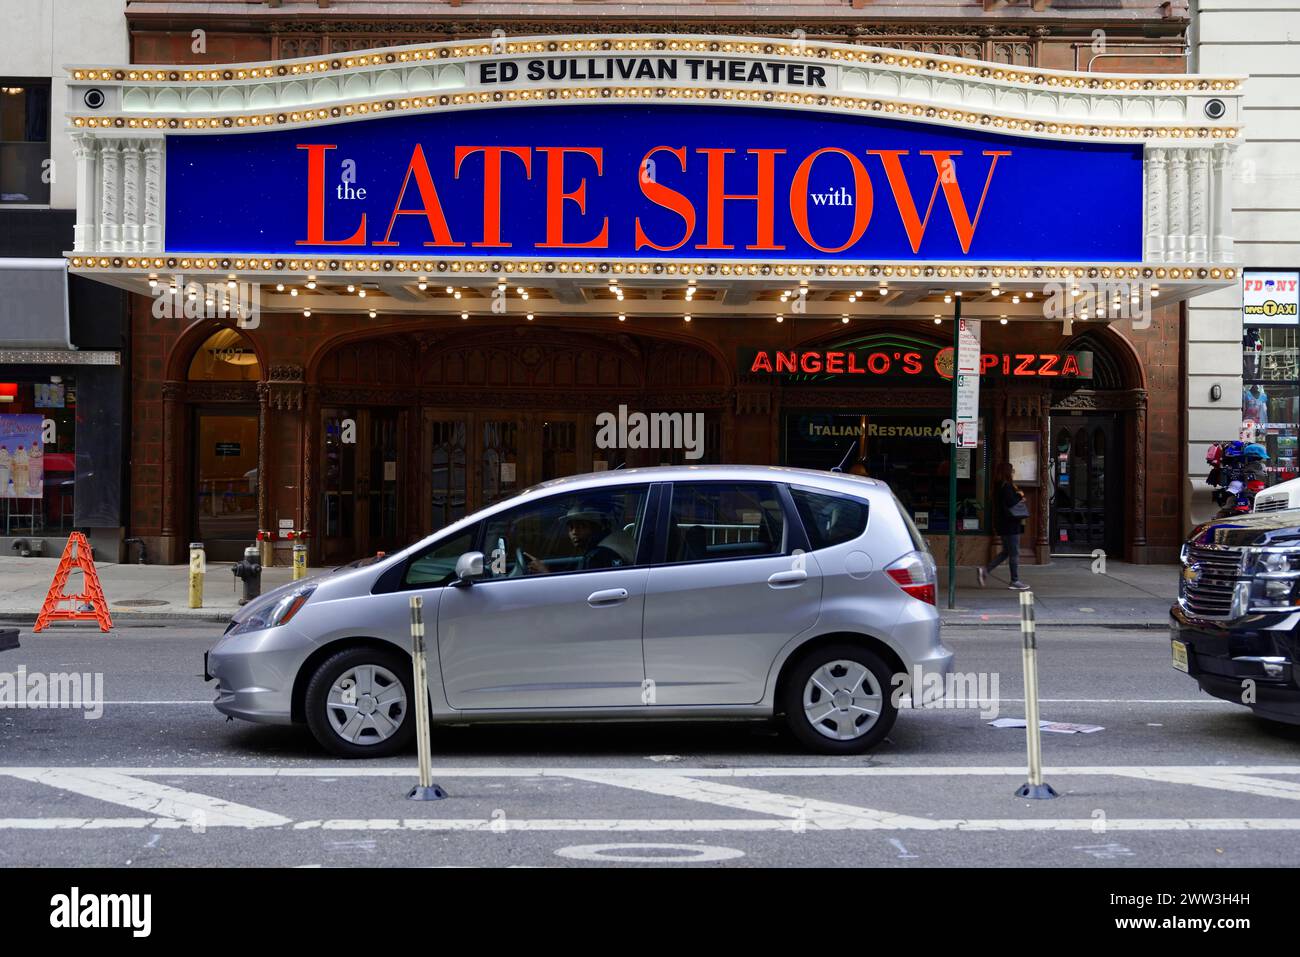 La facciata esterna illuminata del Teatro ed Sullivan con il cartello Late Show, Manhattan, New York, New York, New York, USA, nord America Foto Stock